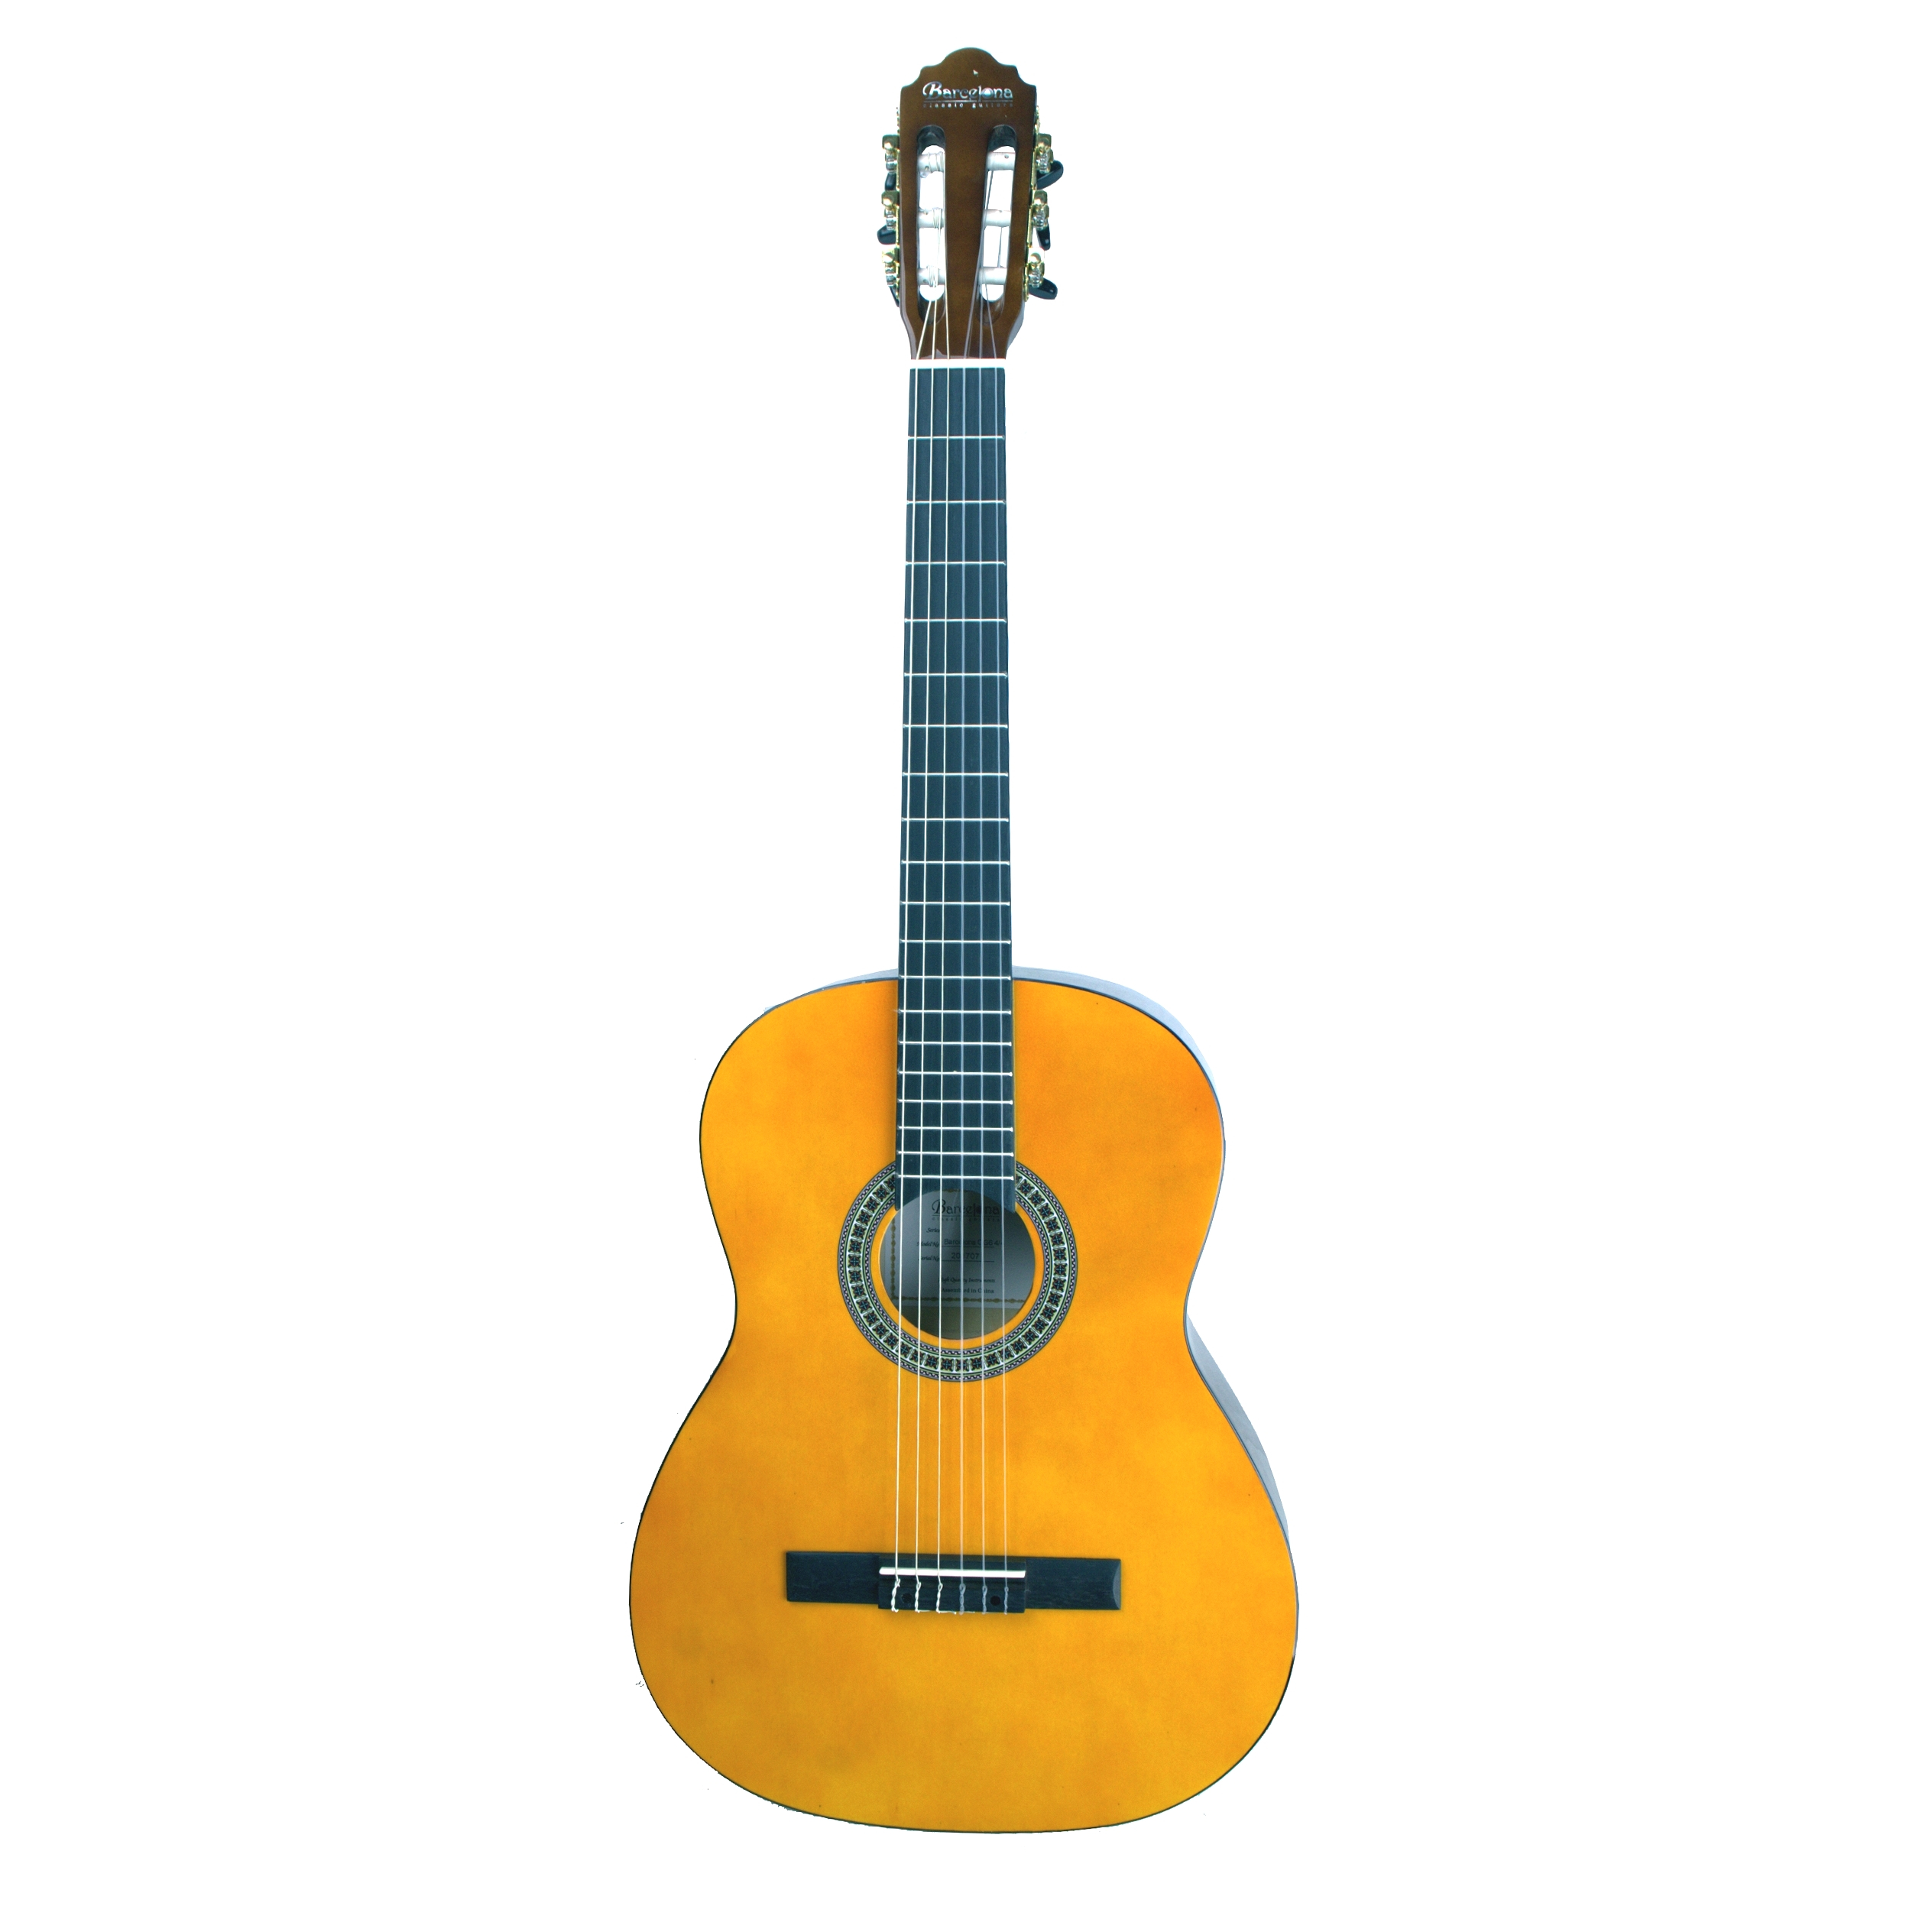 BARCELONA CG6 4/4 - классическая гитара, размер 4/4, анкер купить в prostore.me